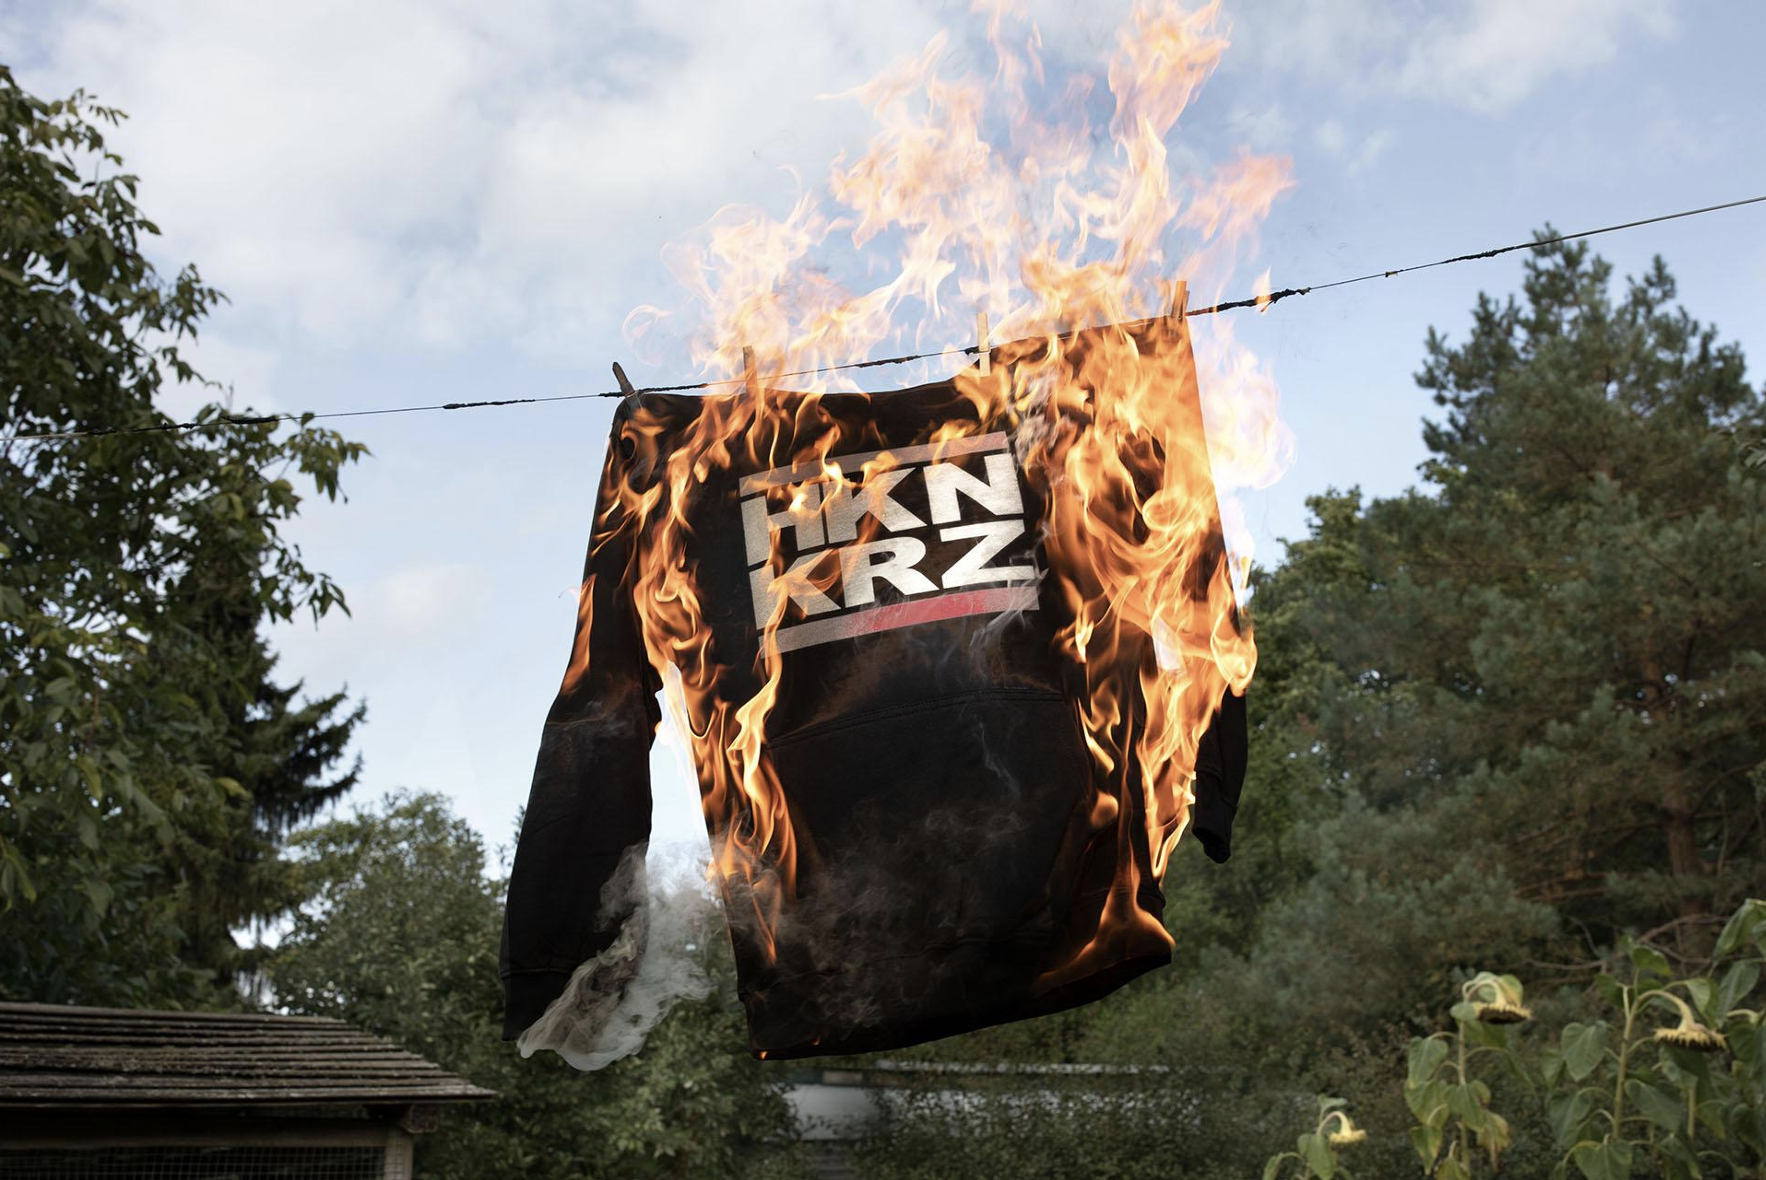 Ein Pullover mit der Aufschrift HKN KRZ (für Hakenkreuz) hängt brennend an einer Wäscheleine.